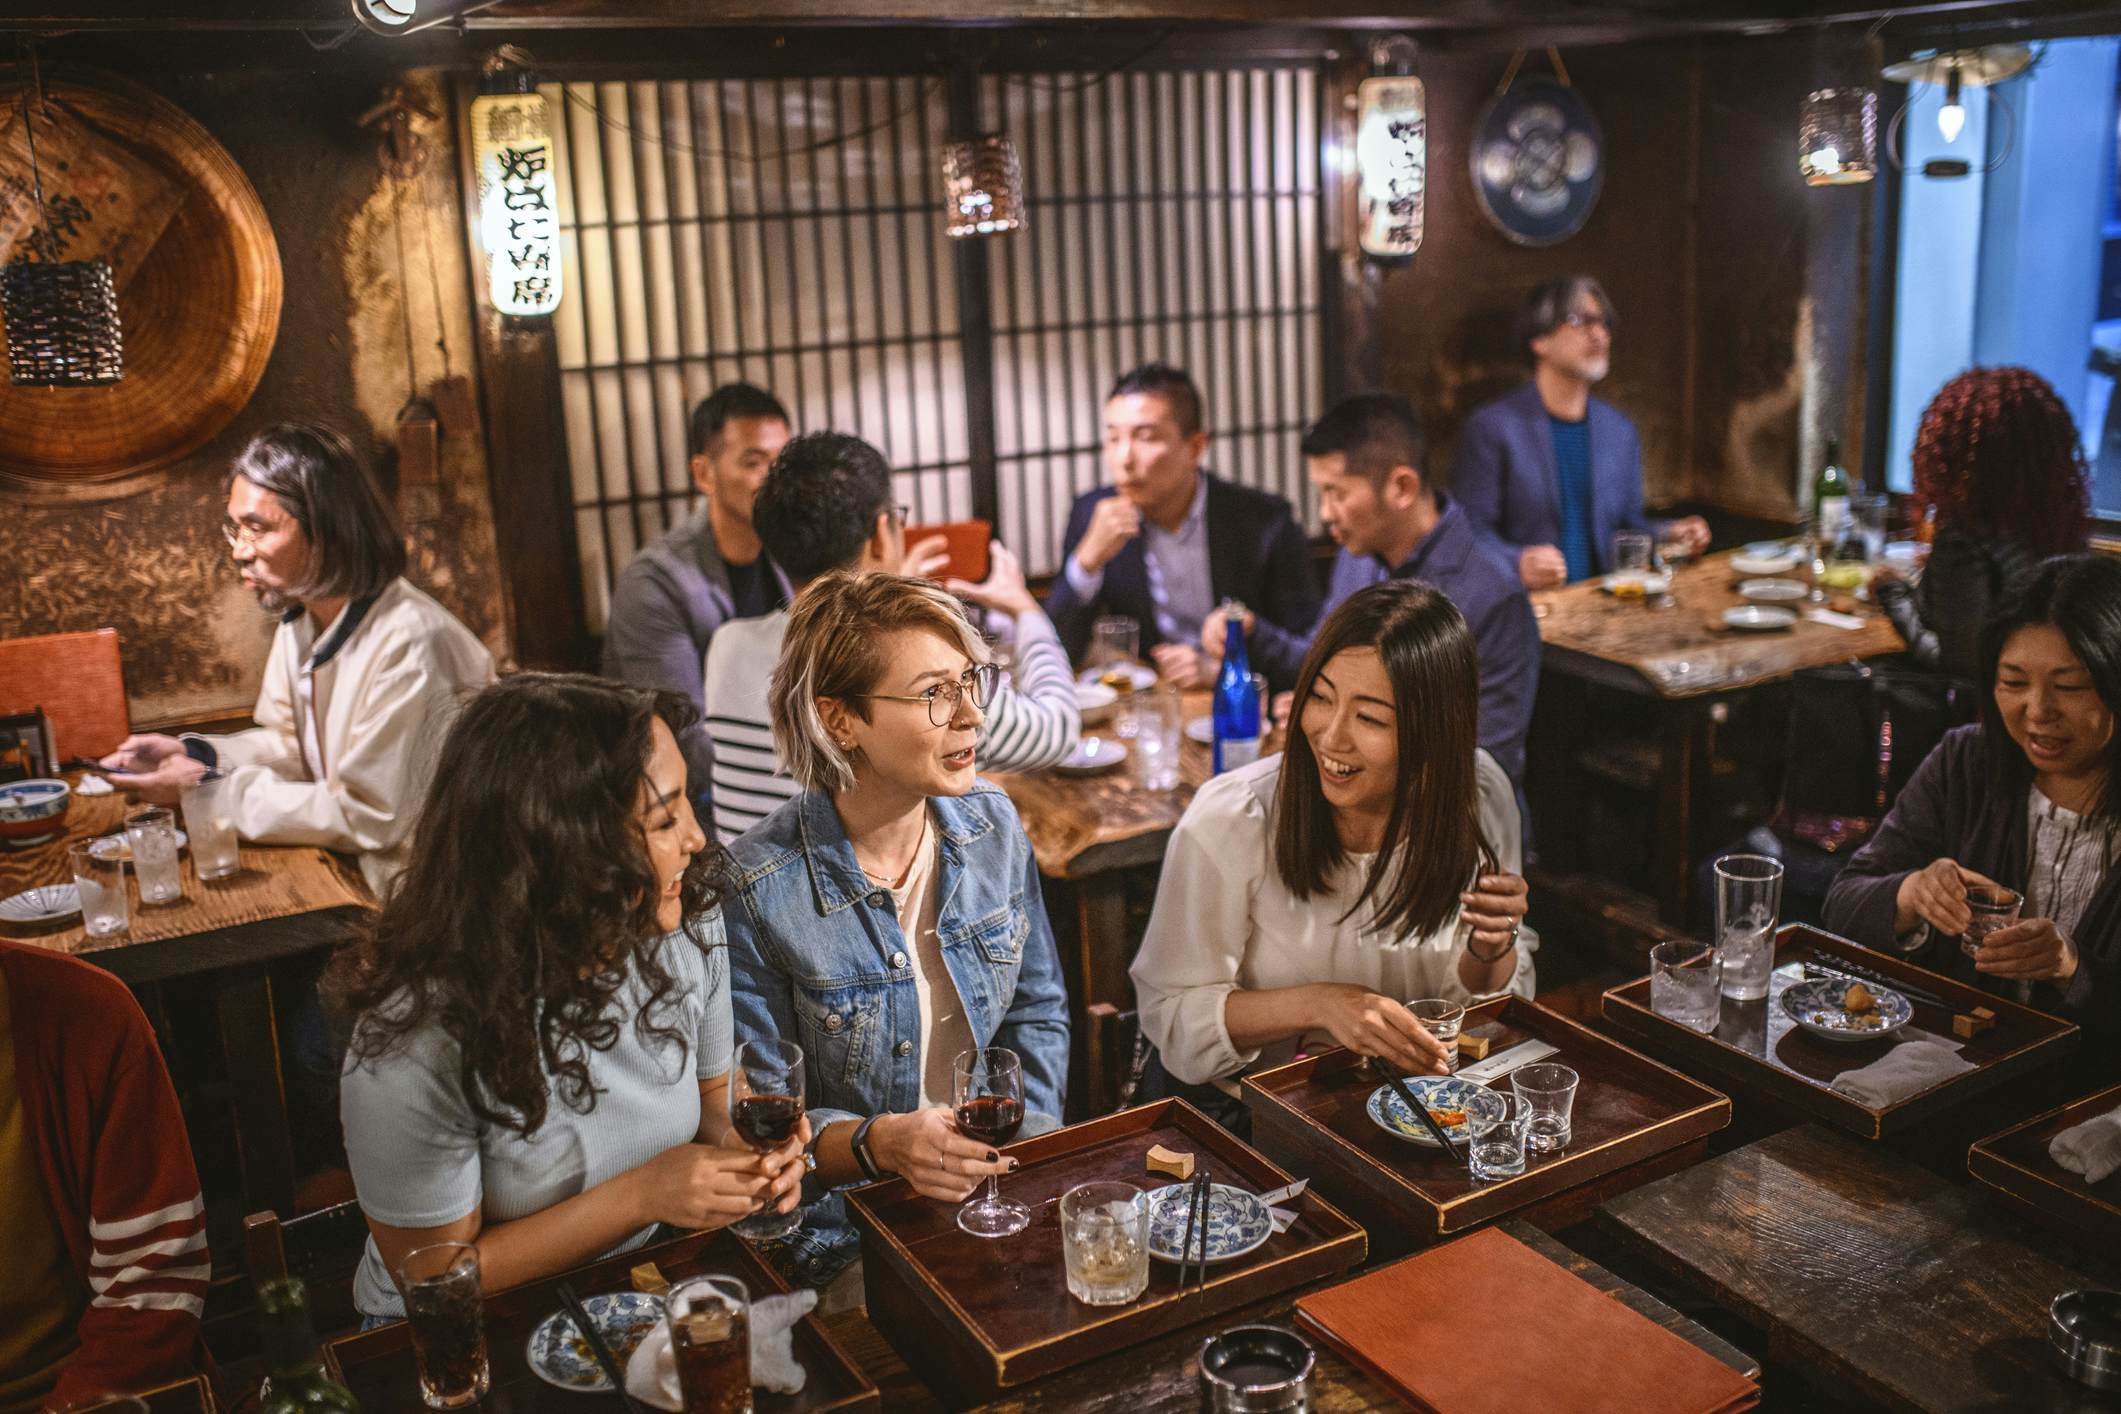 Best 24-Hour Restaurants in Tokyo